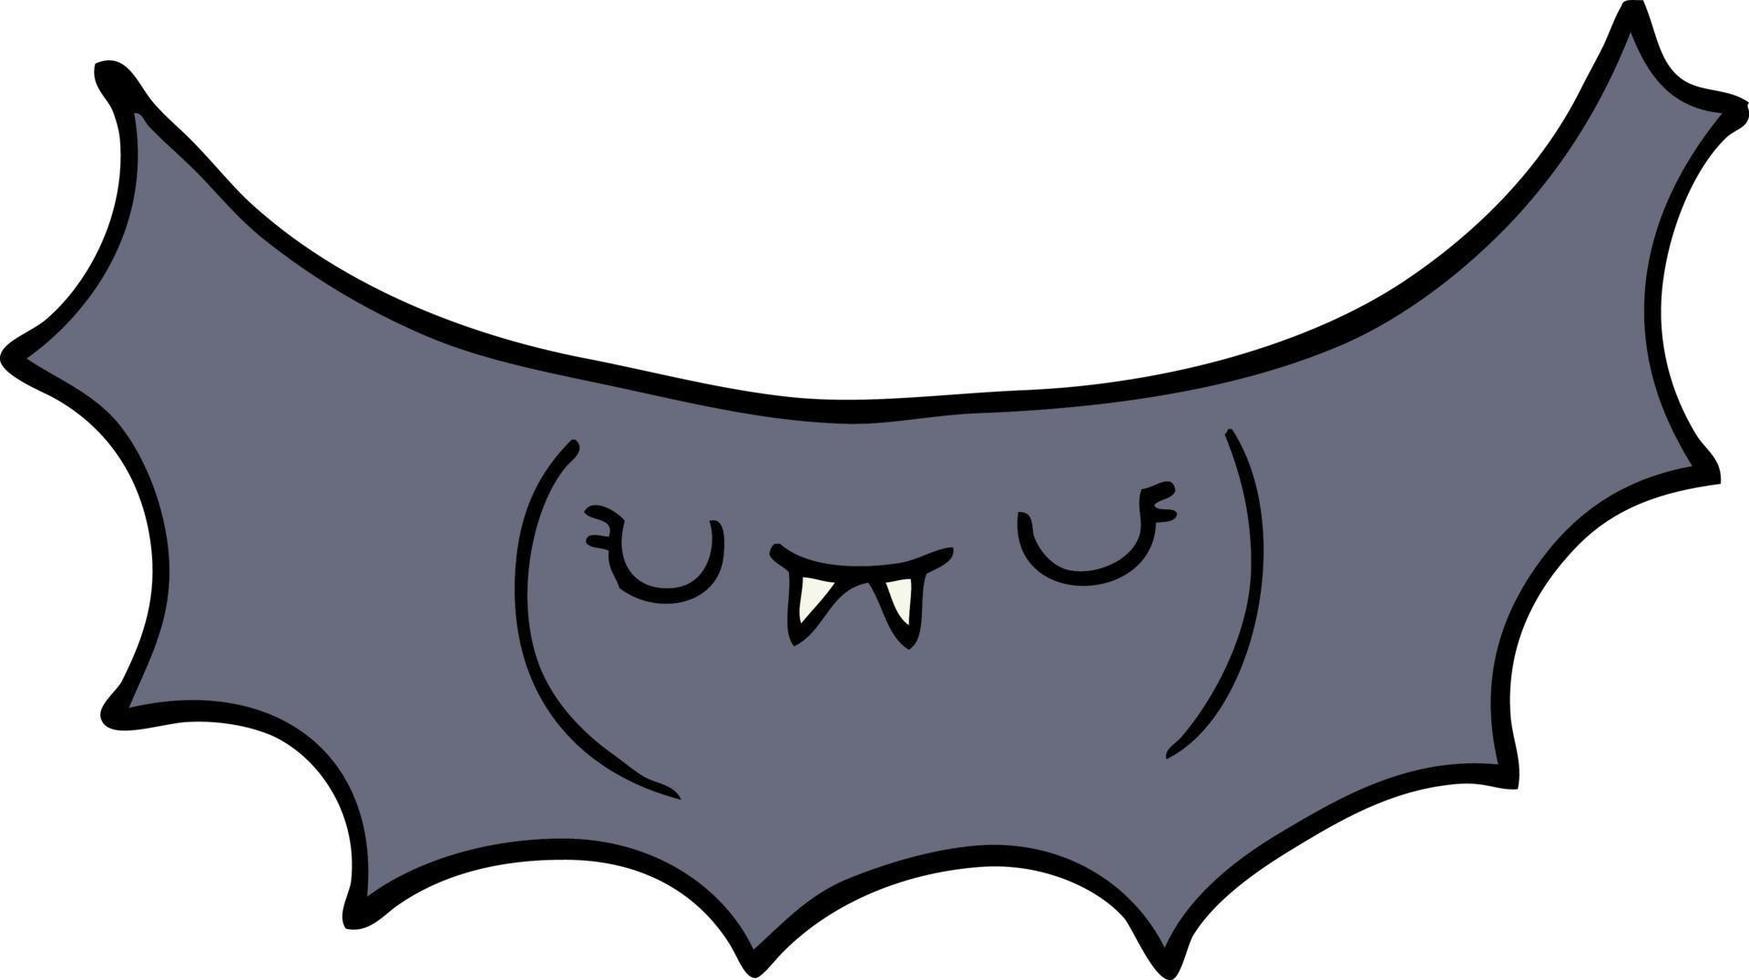 murciélago vampiro de dibujos animados vector